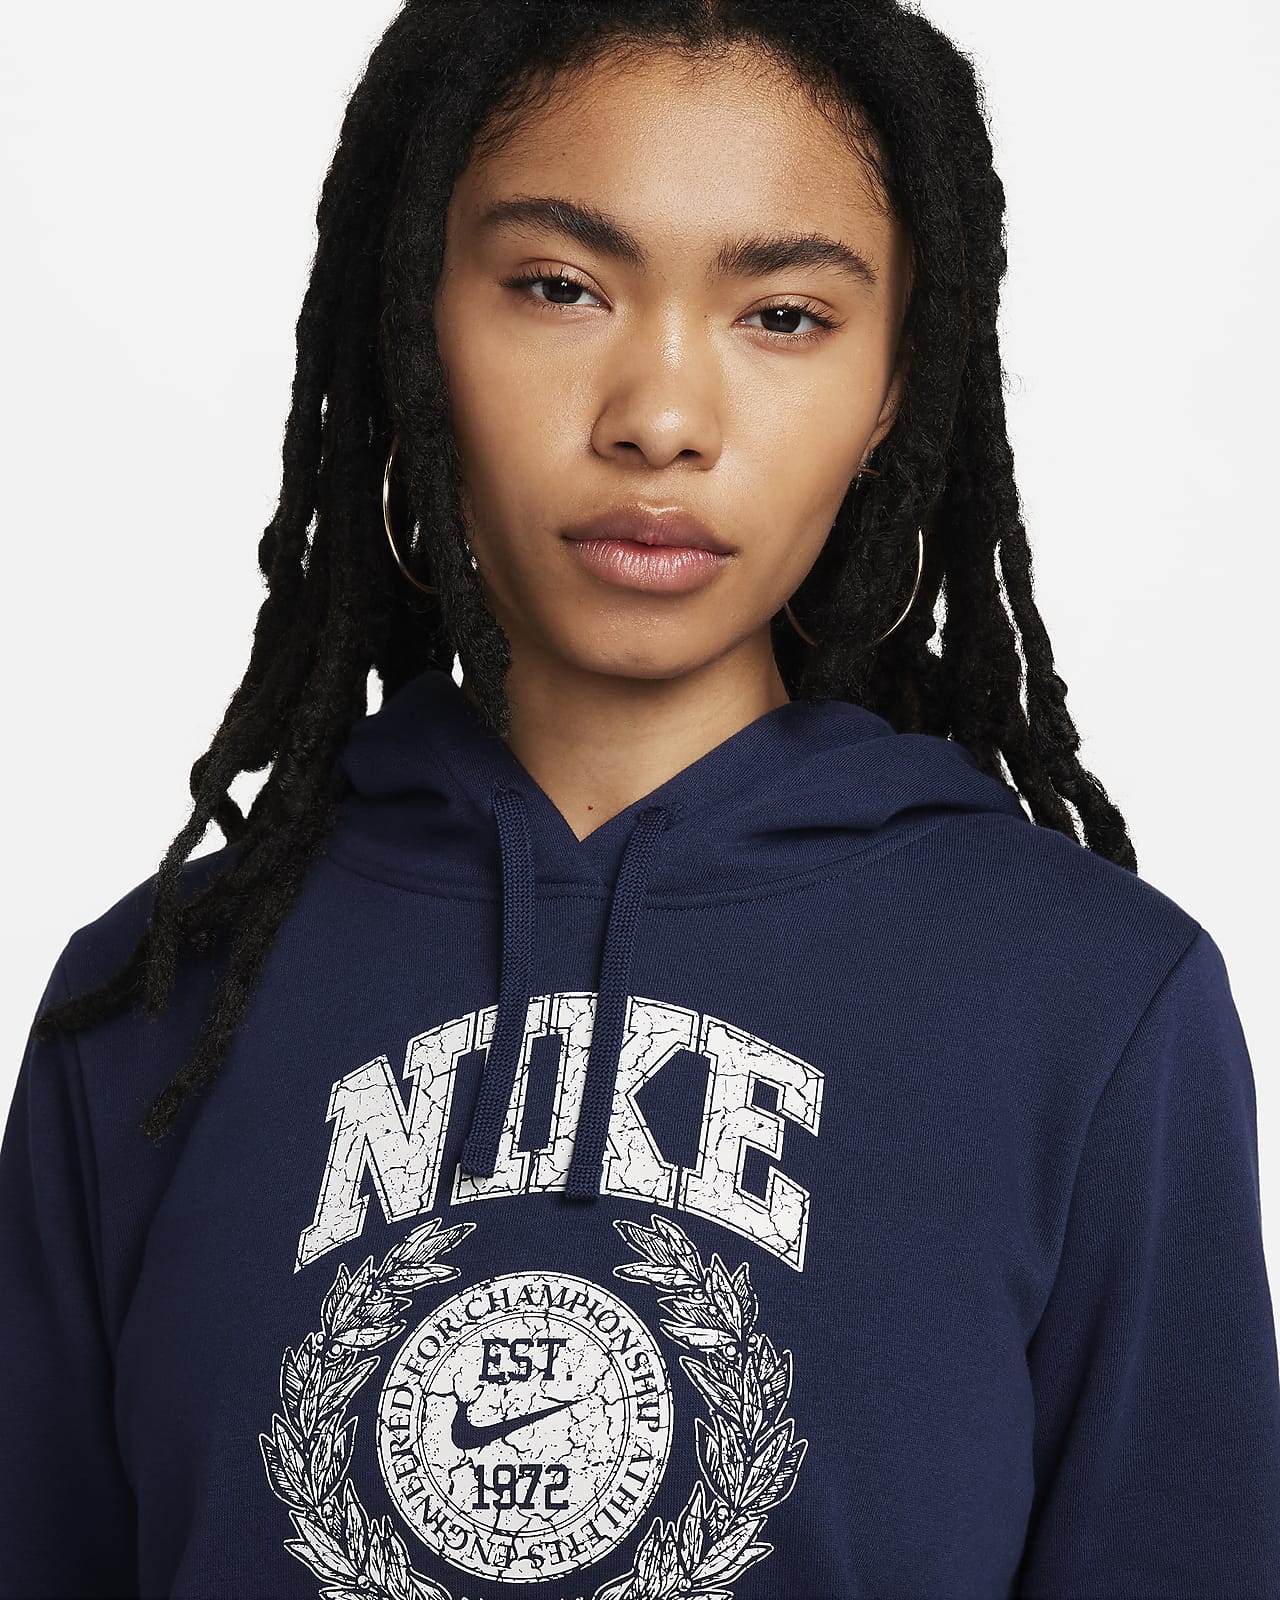 Nike Sportswear Club Fleece Overhead Hoodie - Navy